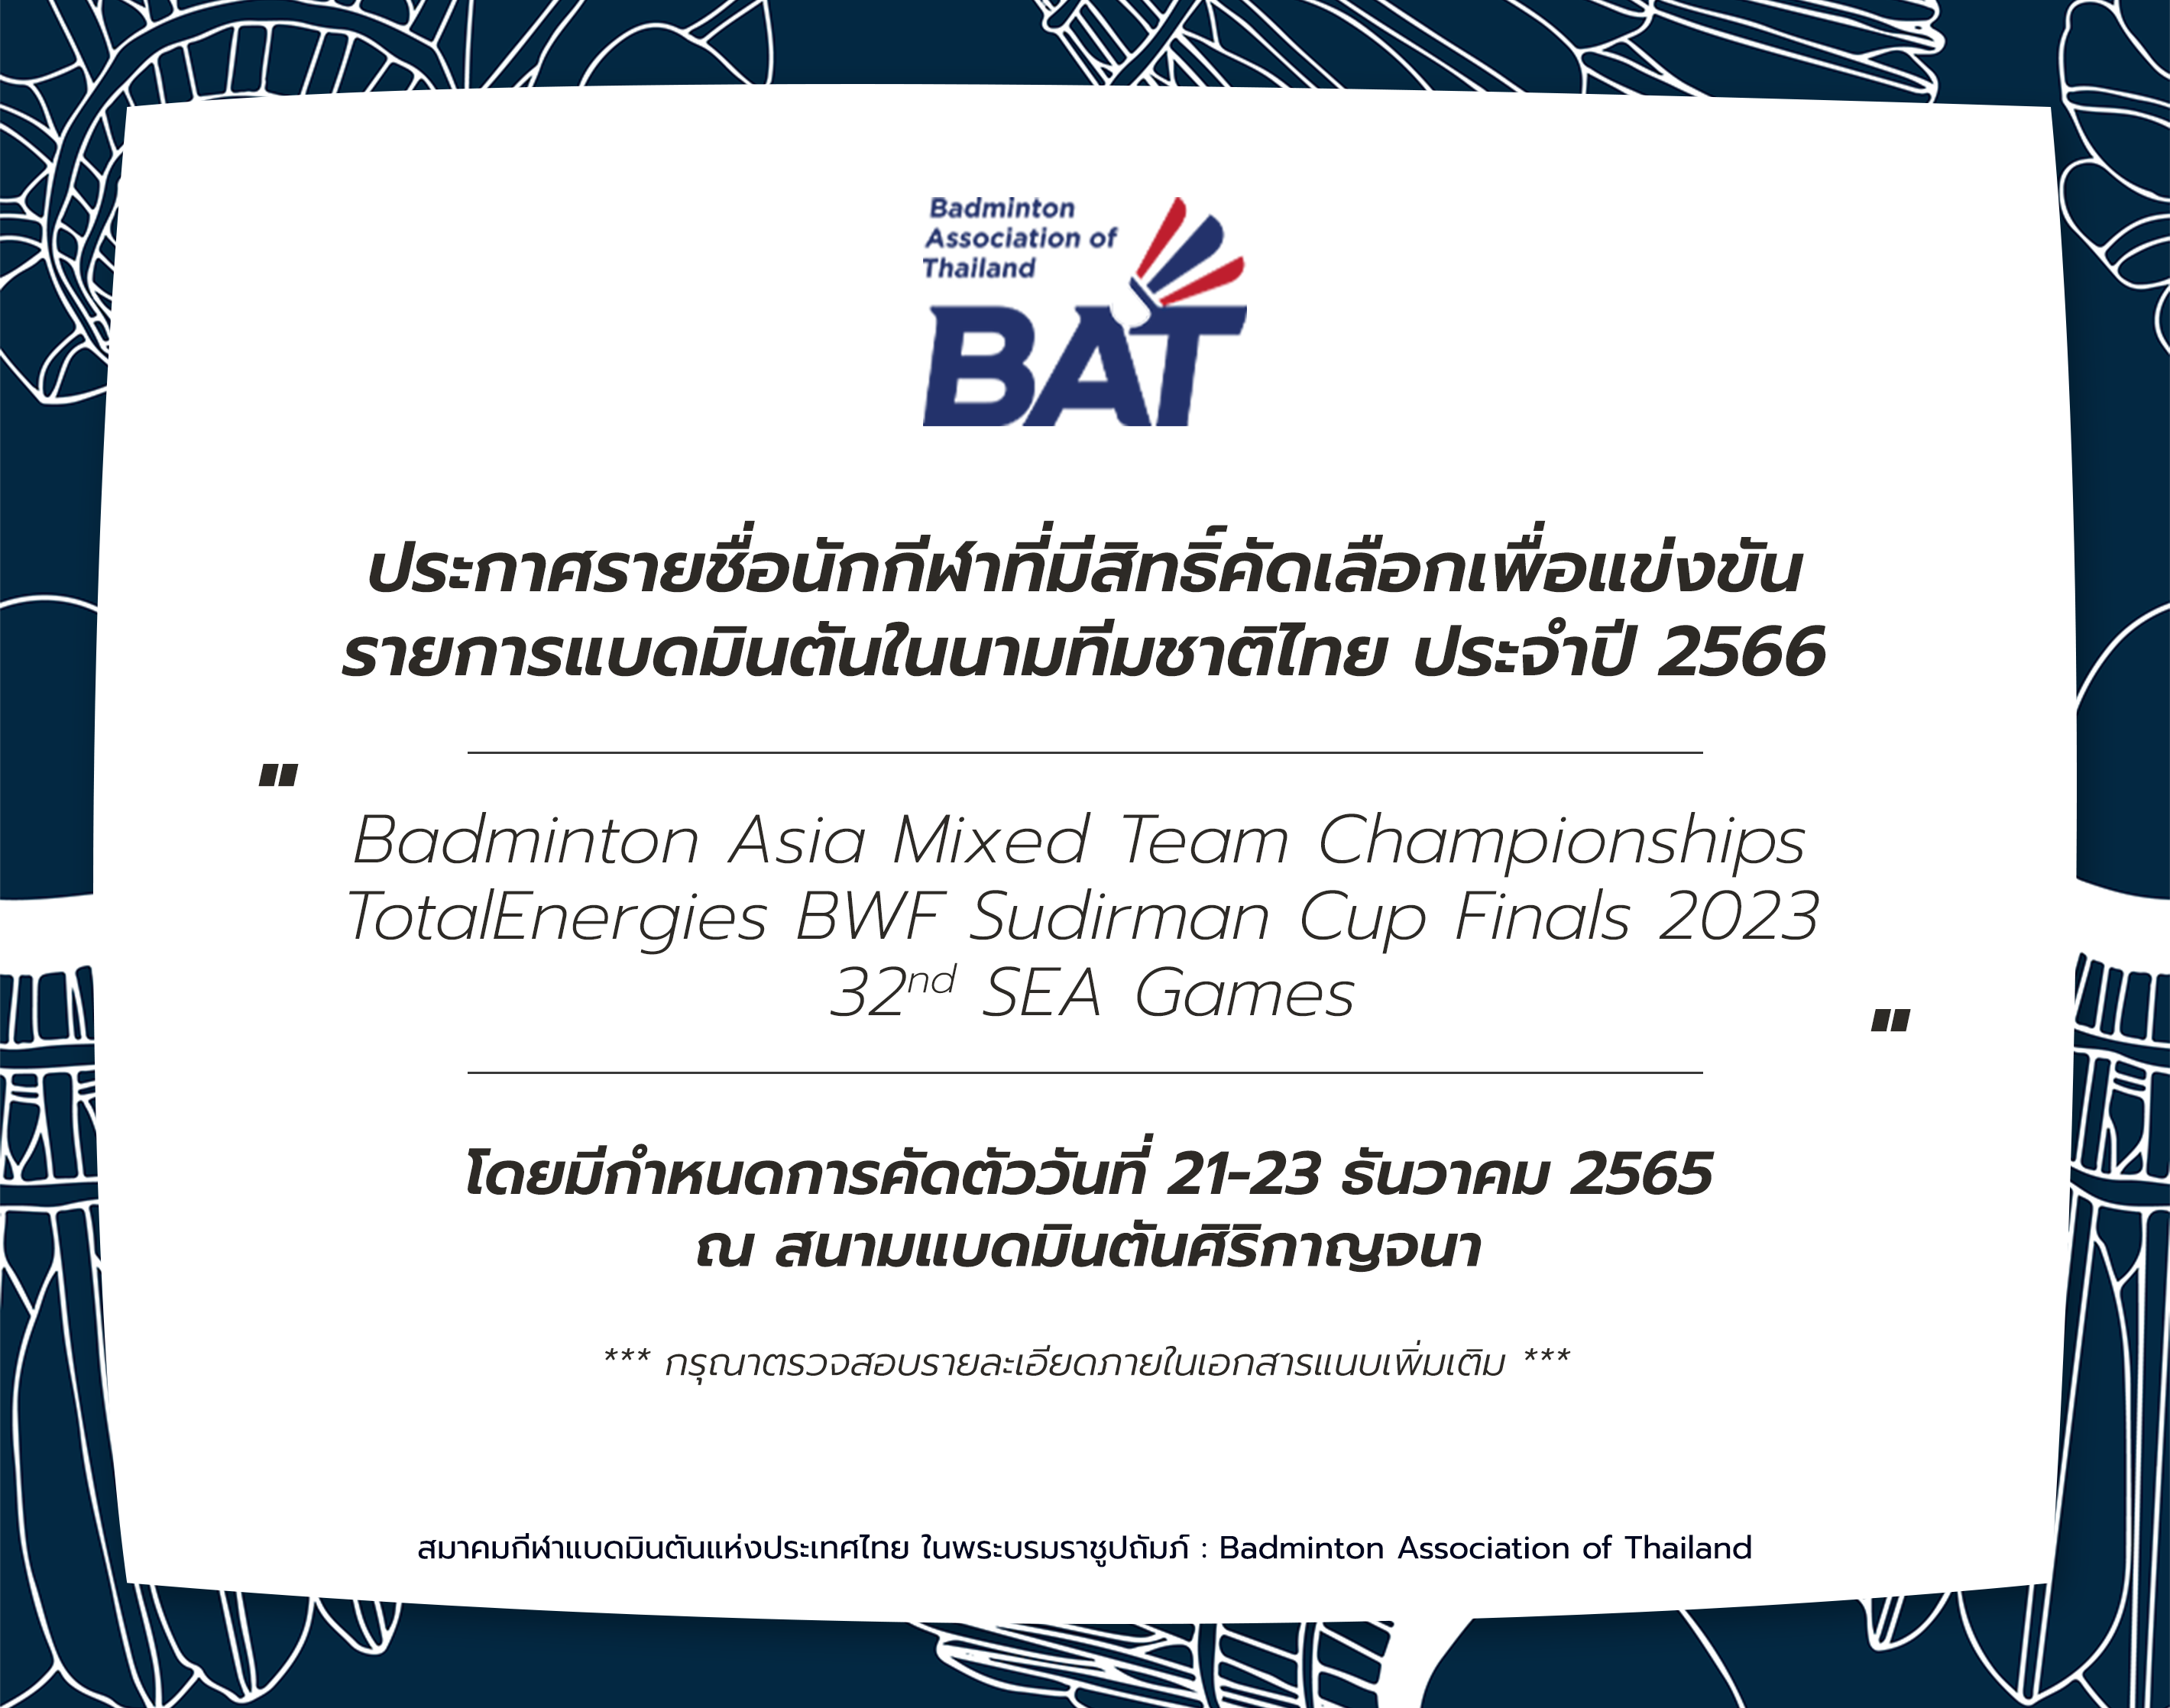 ประกาศรายชื่อนักกีฬาที่มีสิทธิ์คัดเลือกเพื่อแข่งขันรายการแบดมินตันในนามทีมชาติไทย ประจำปี 2566